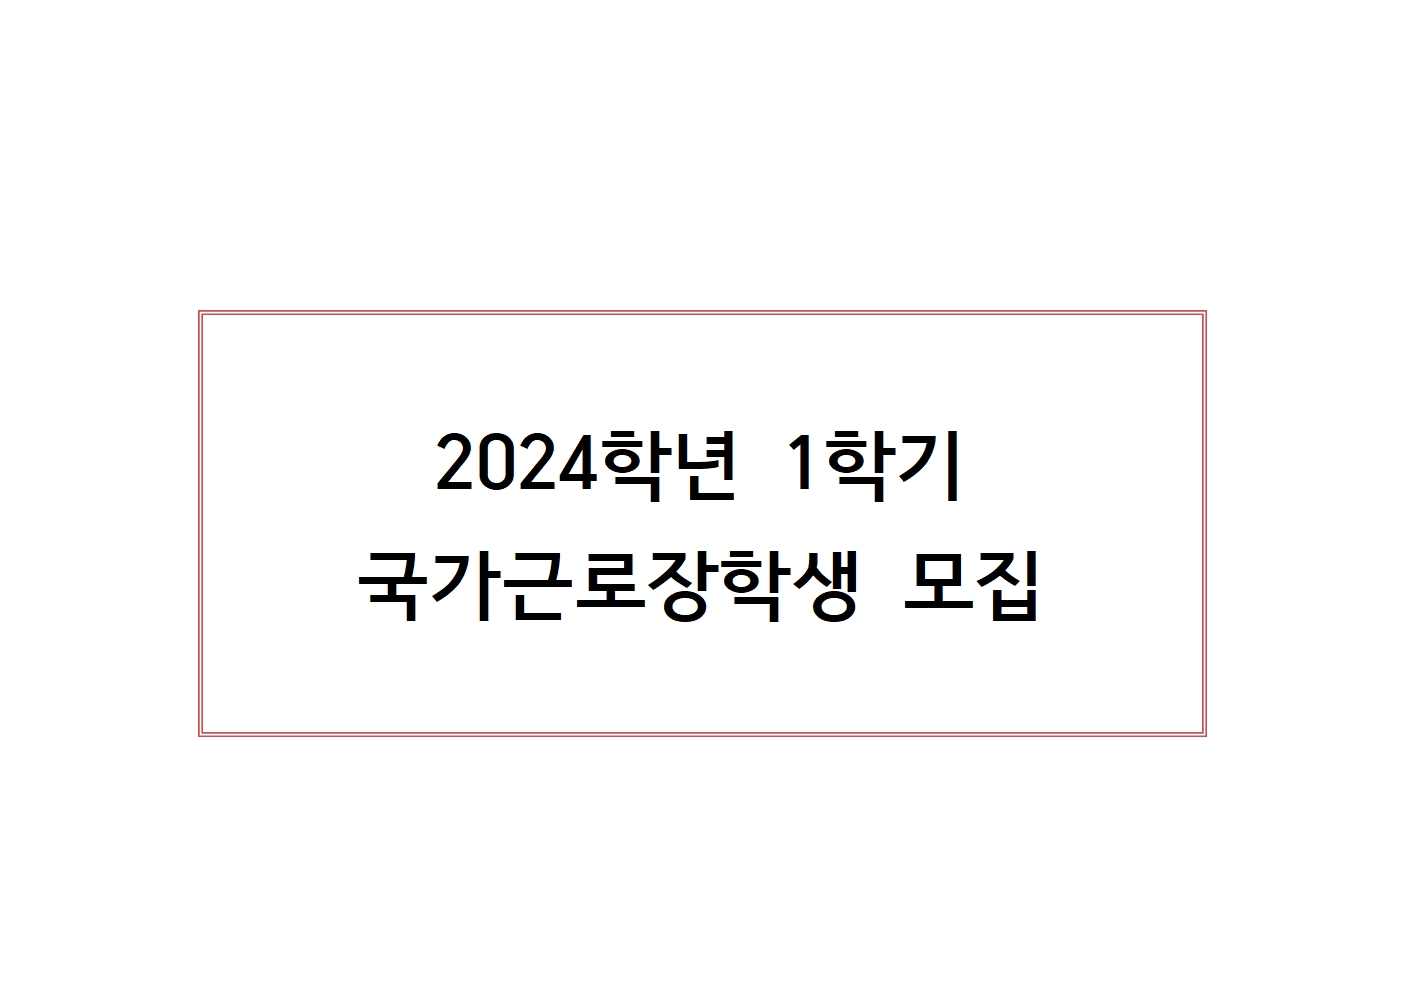 24-1학기 국가근로장학생 모집